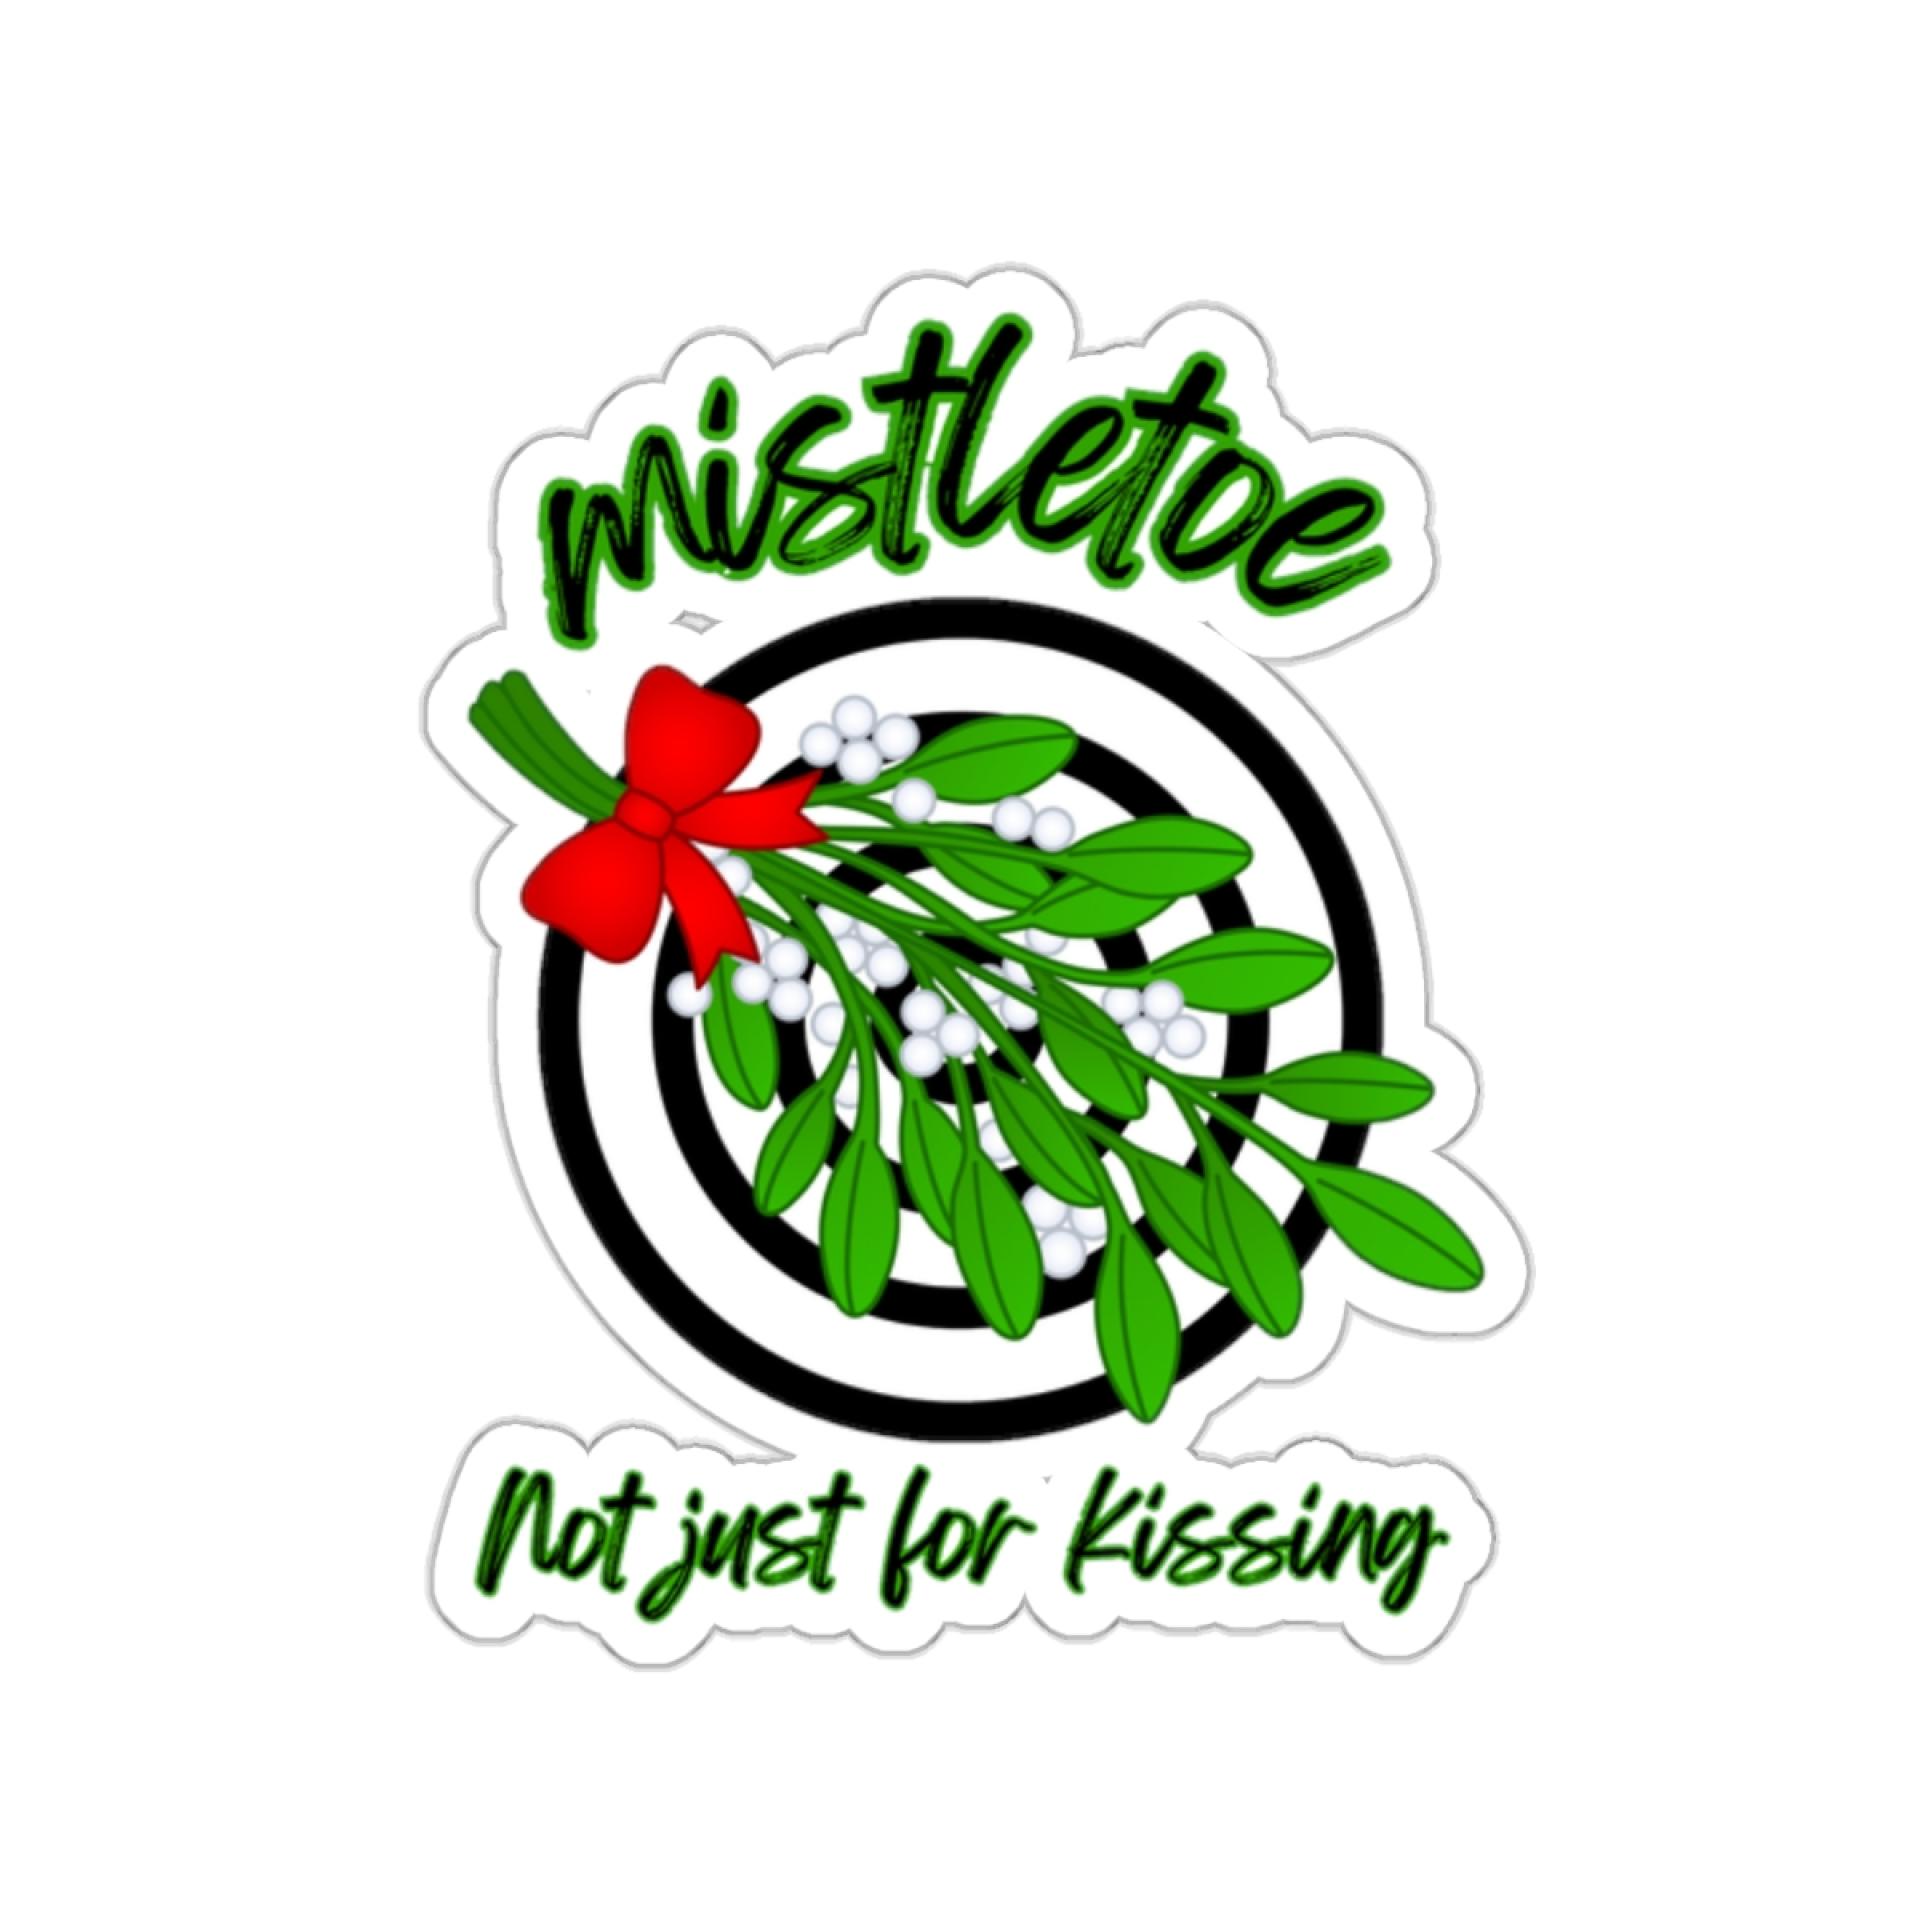 Mistletoe, not just for kissing